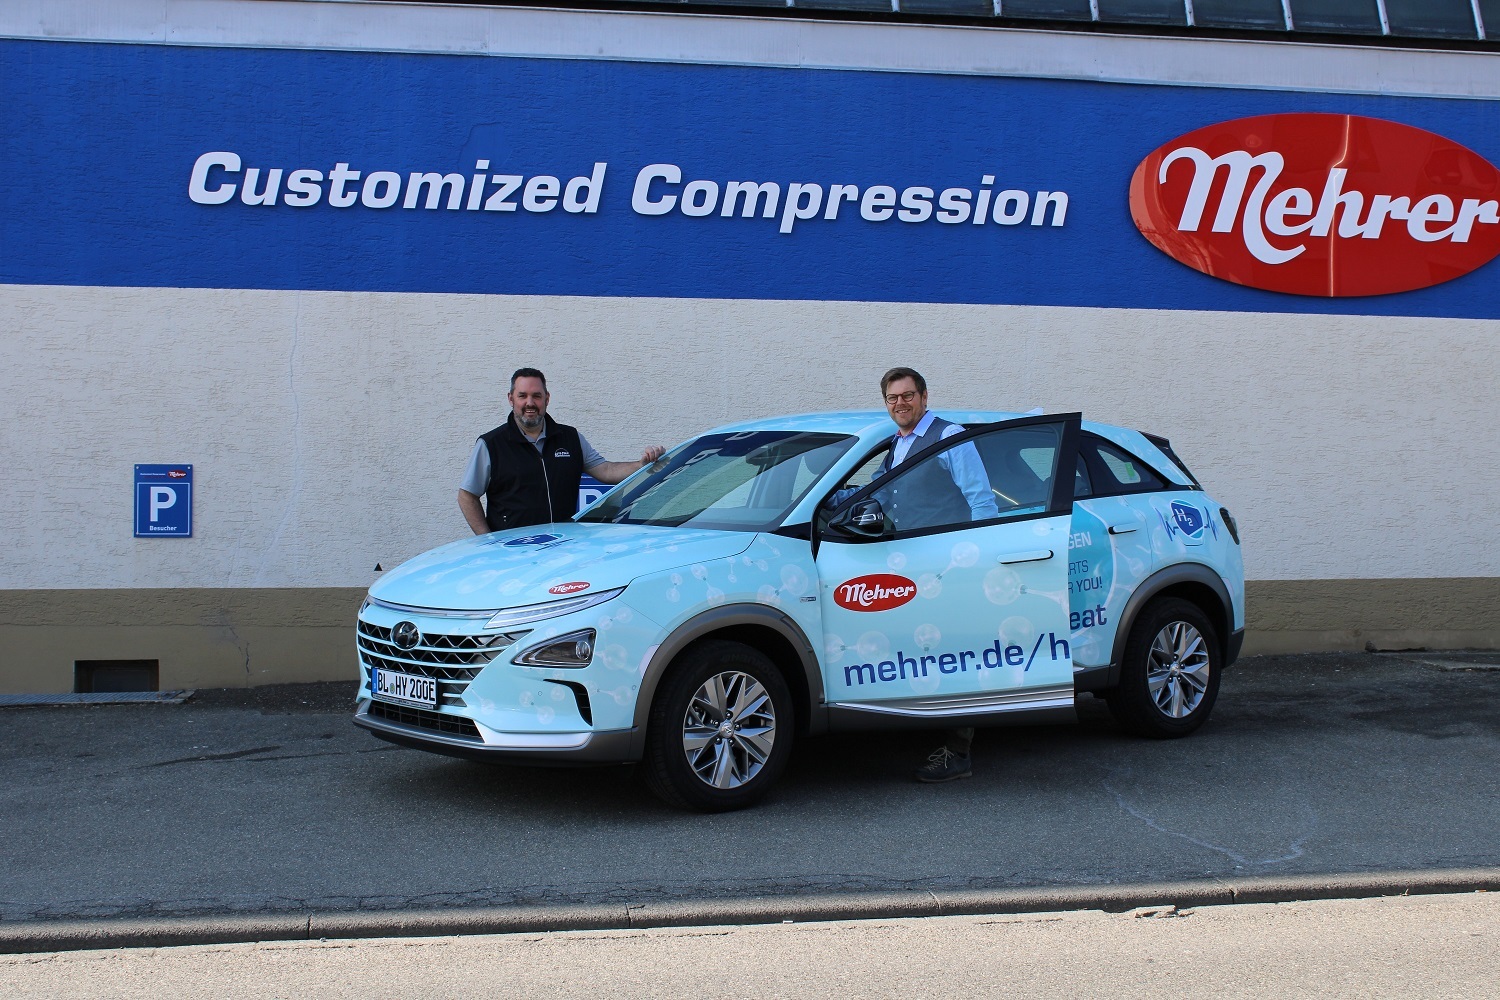 Neues Brennstofzellen Fahrzeug angetrieben mit Wasserstoff, aufgenommen vor dem Firmengelände der Firma Mehrer Compression